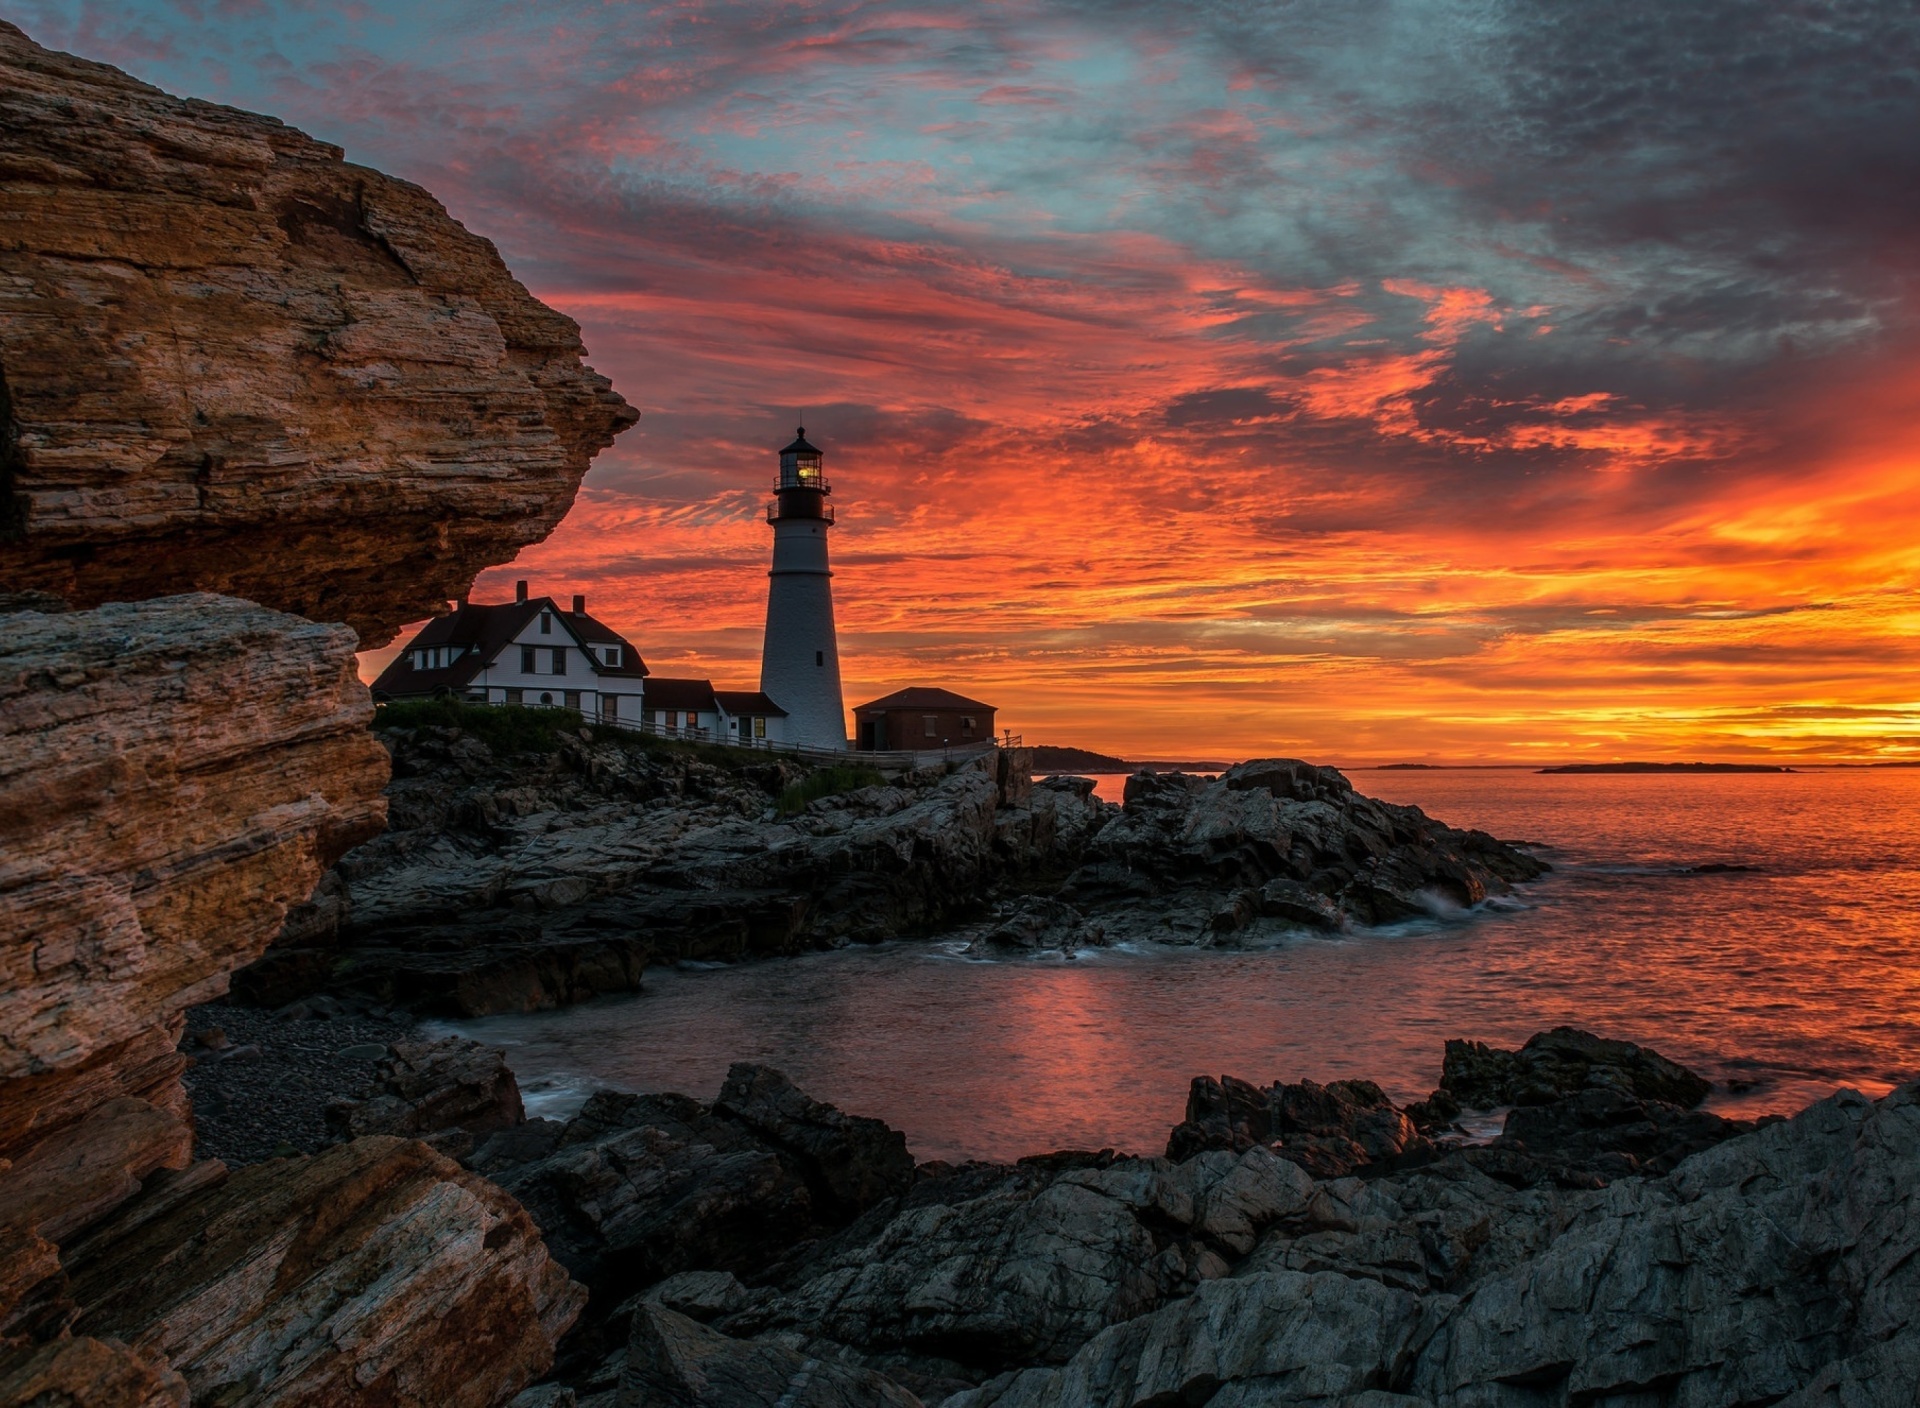 Обои Sunset and lighthouse 1920x1408